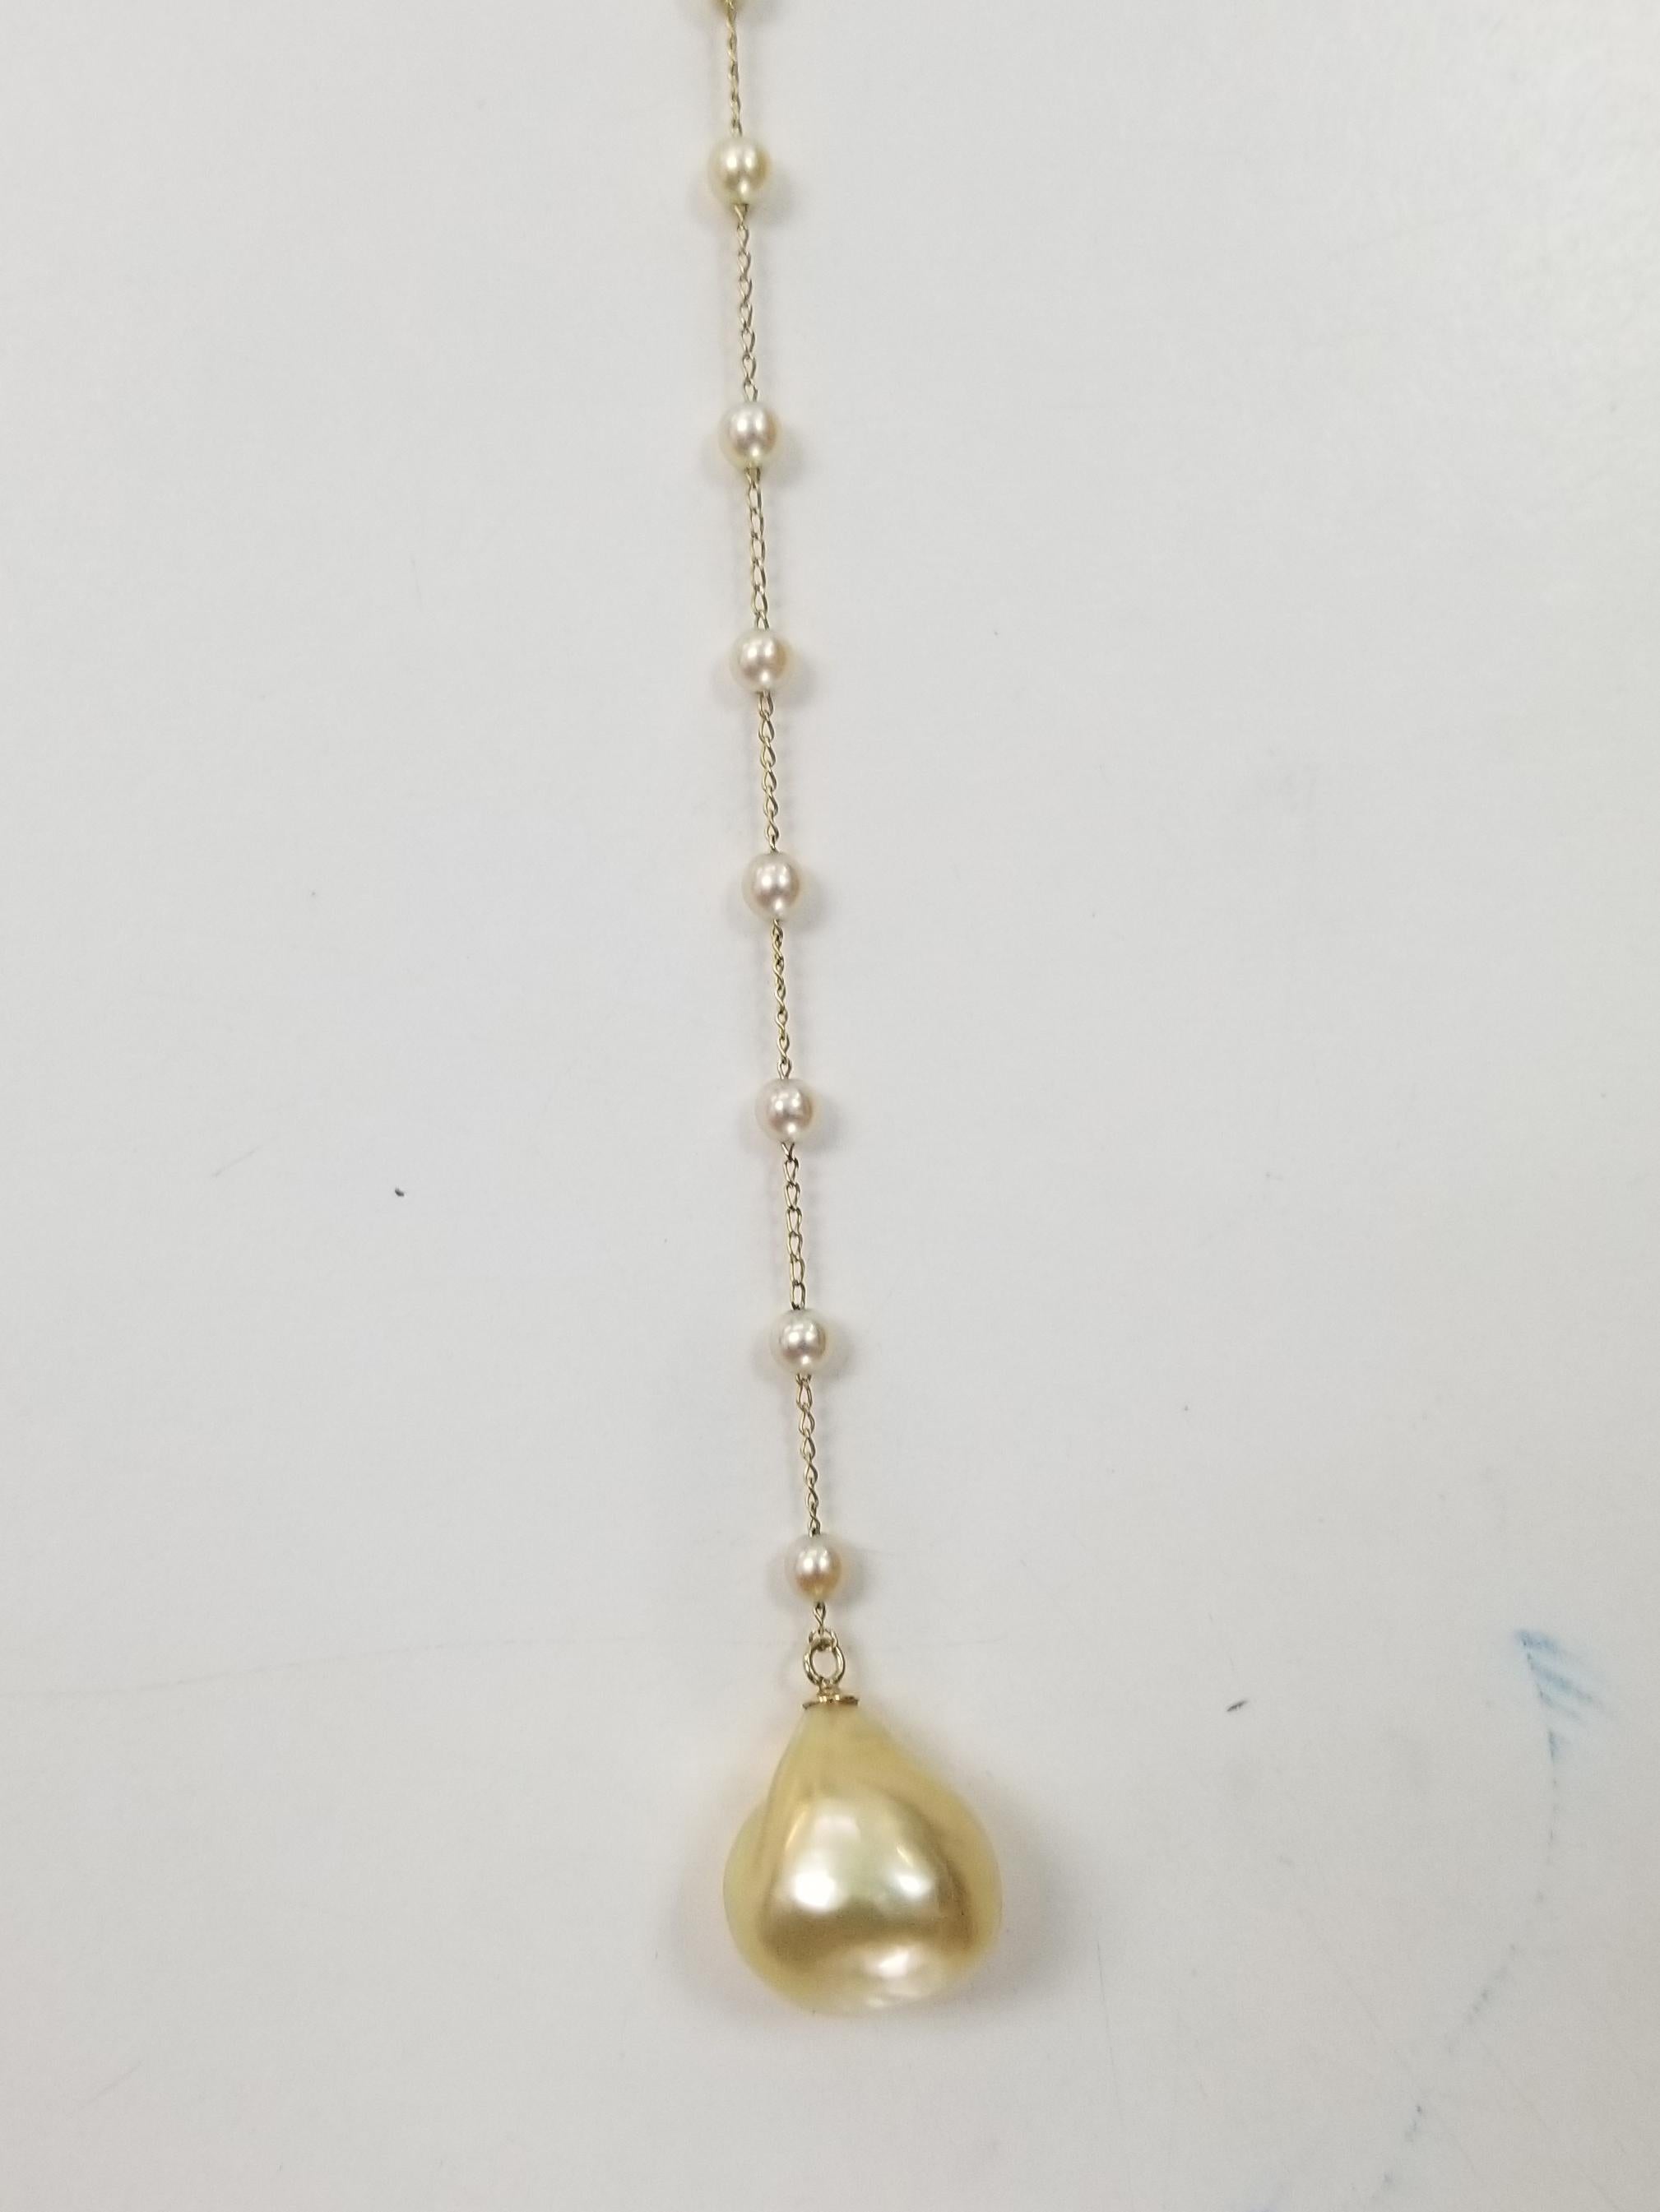 14k gold adjustable necklace